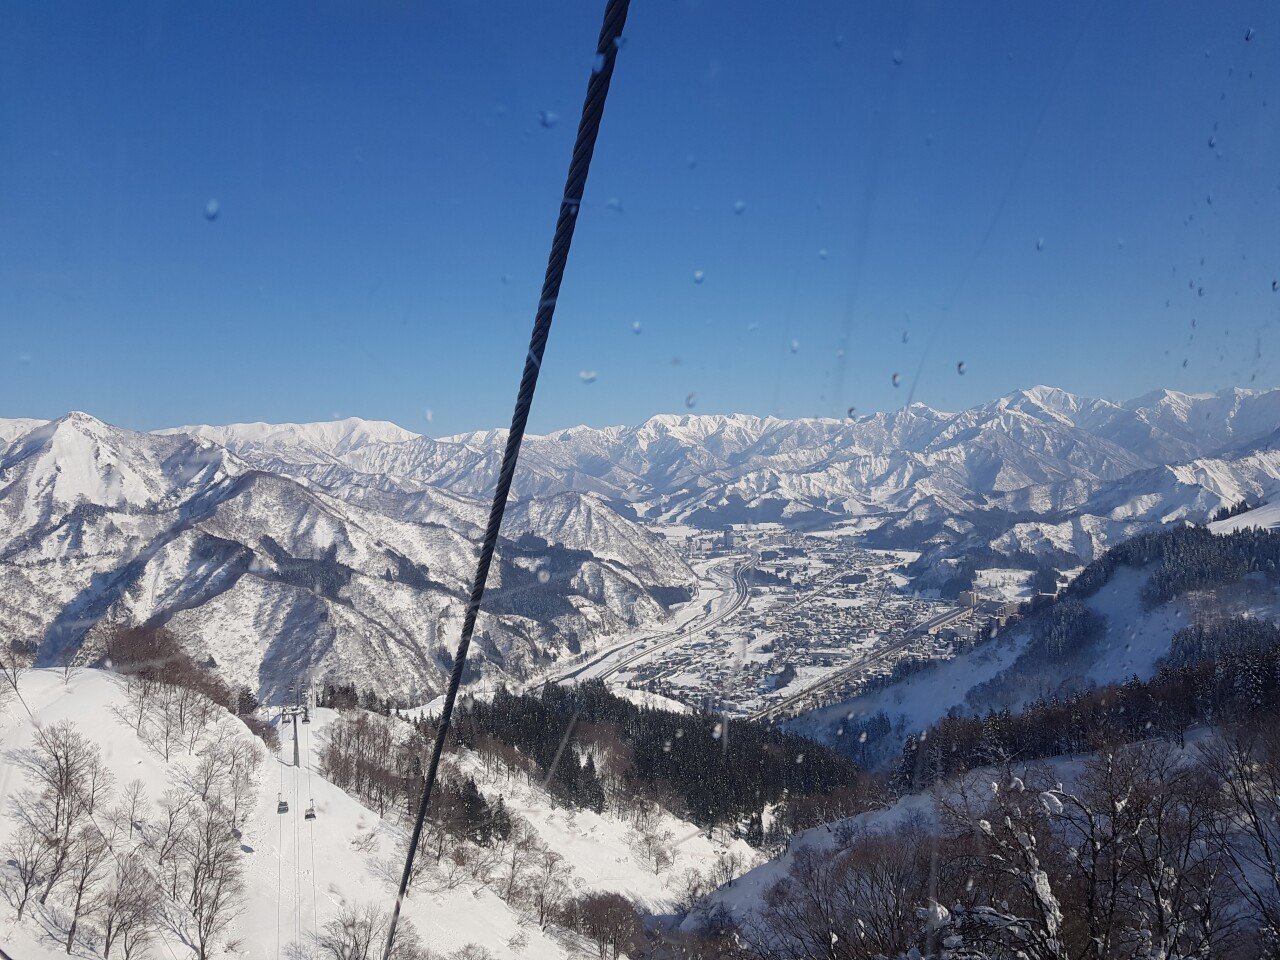 20190130_141015.jpg 눈으로 덮인 겨울 니가타&나가노 여행기(1) (스압?)